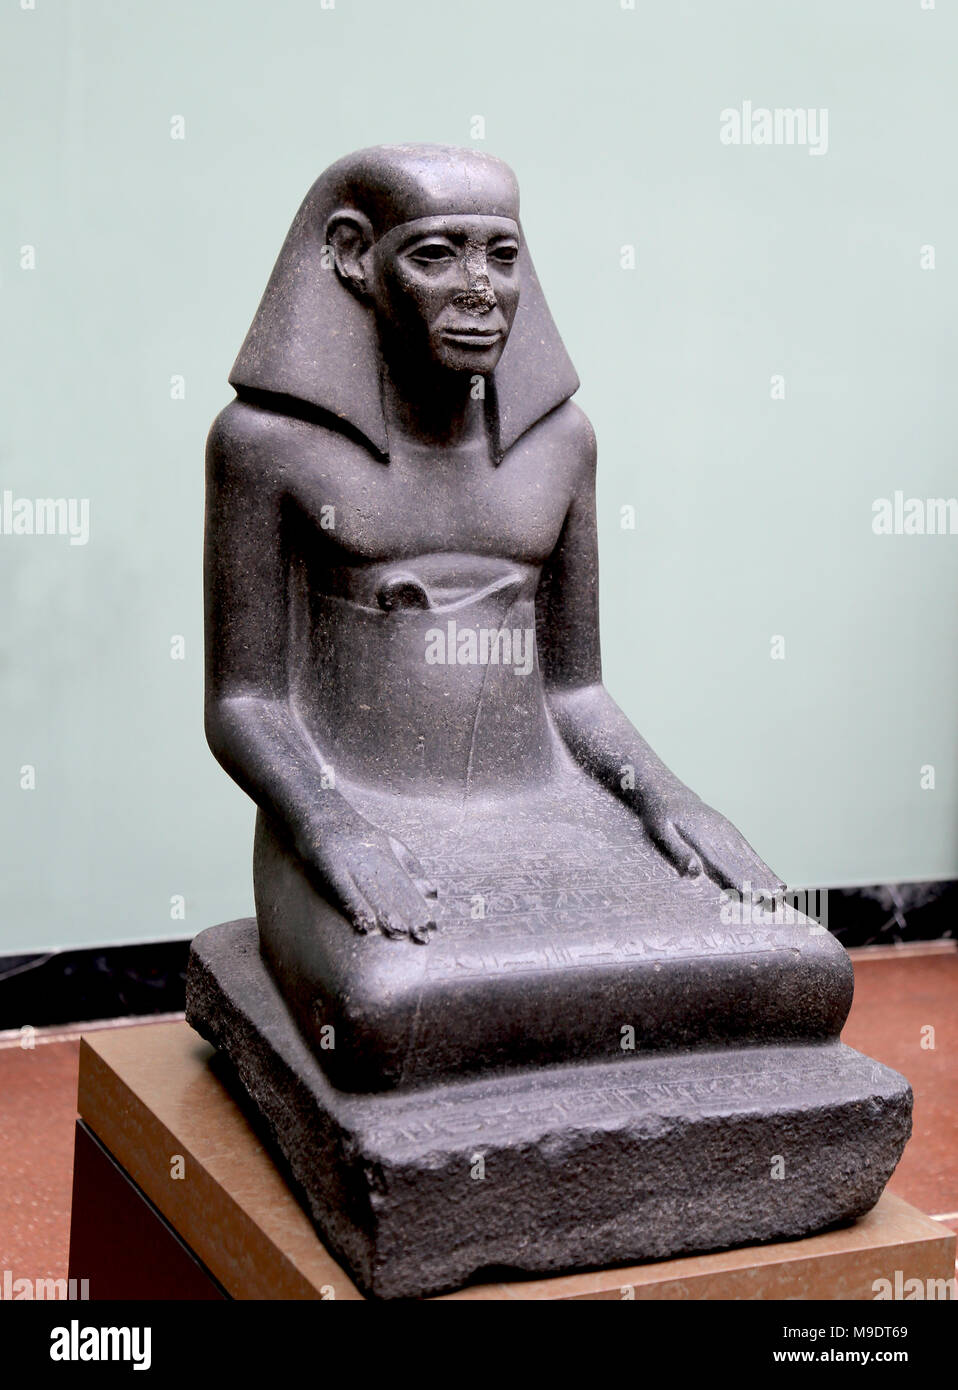 Gebu, Meister der königlichen Schatzkammer. Granit statue C. 1700 v. Chr.. 13, Reich der Mitte. Vom Tempel des Amun, Karnak, Ägypten. Stockfoto